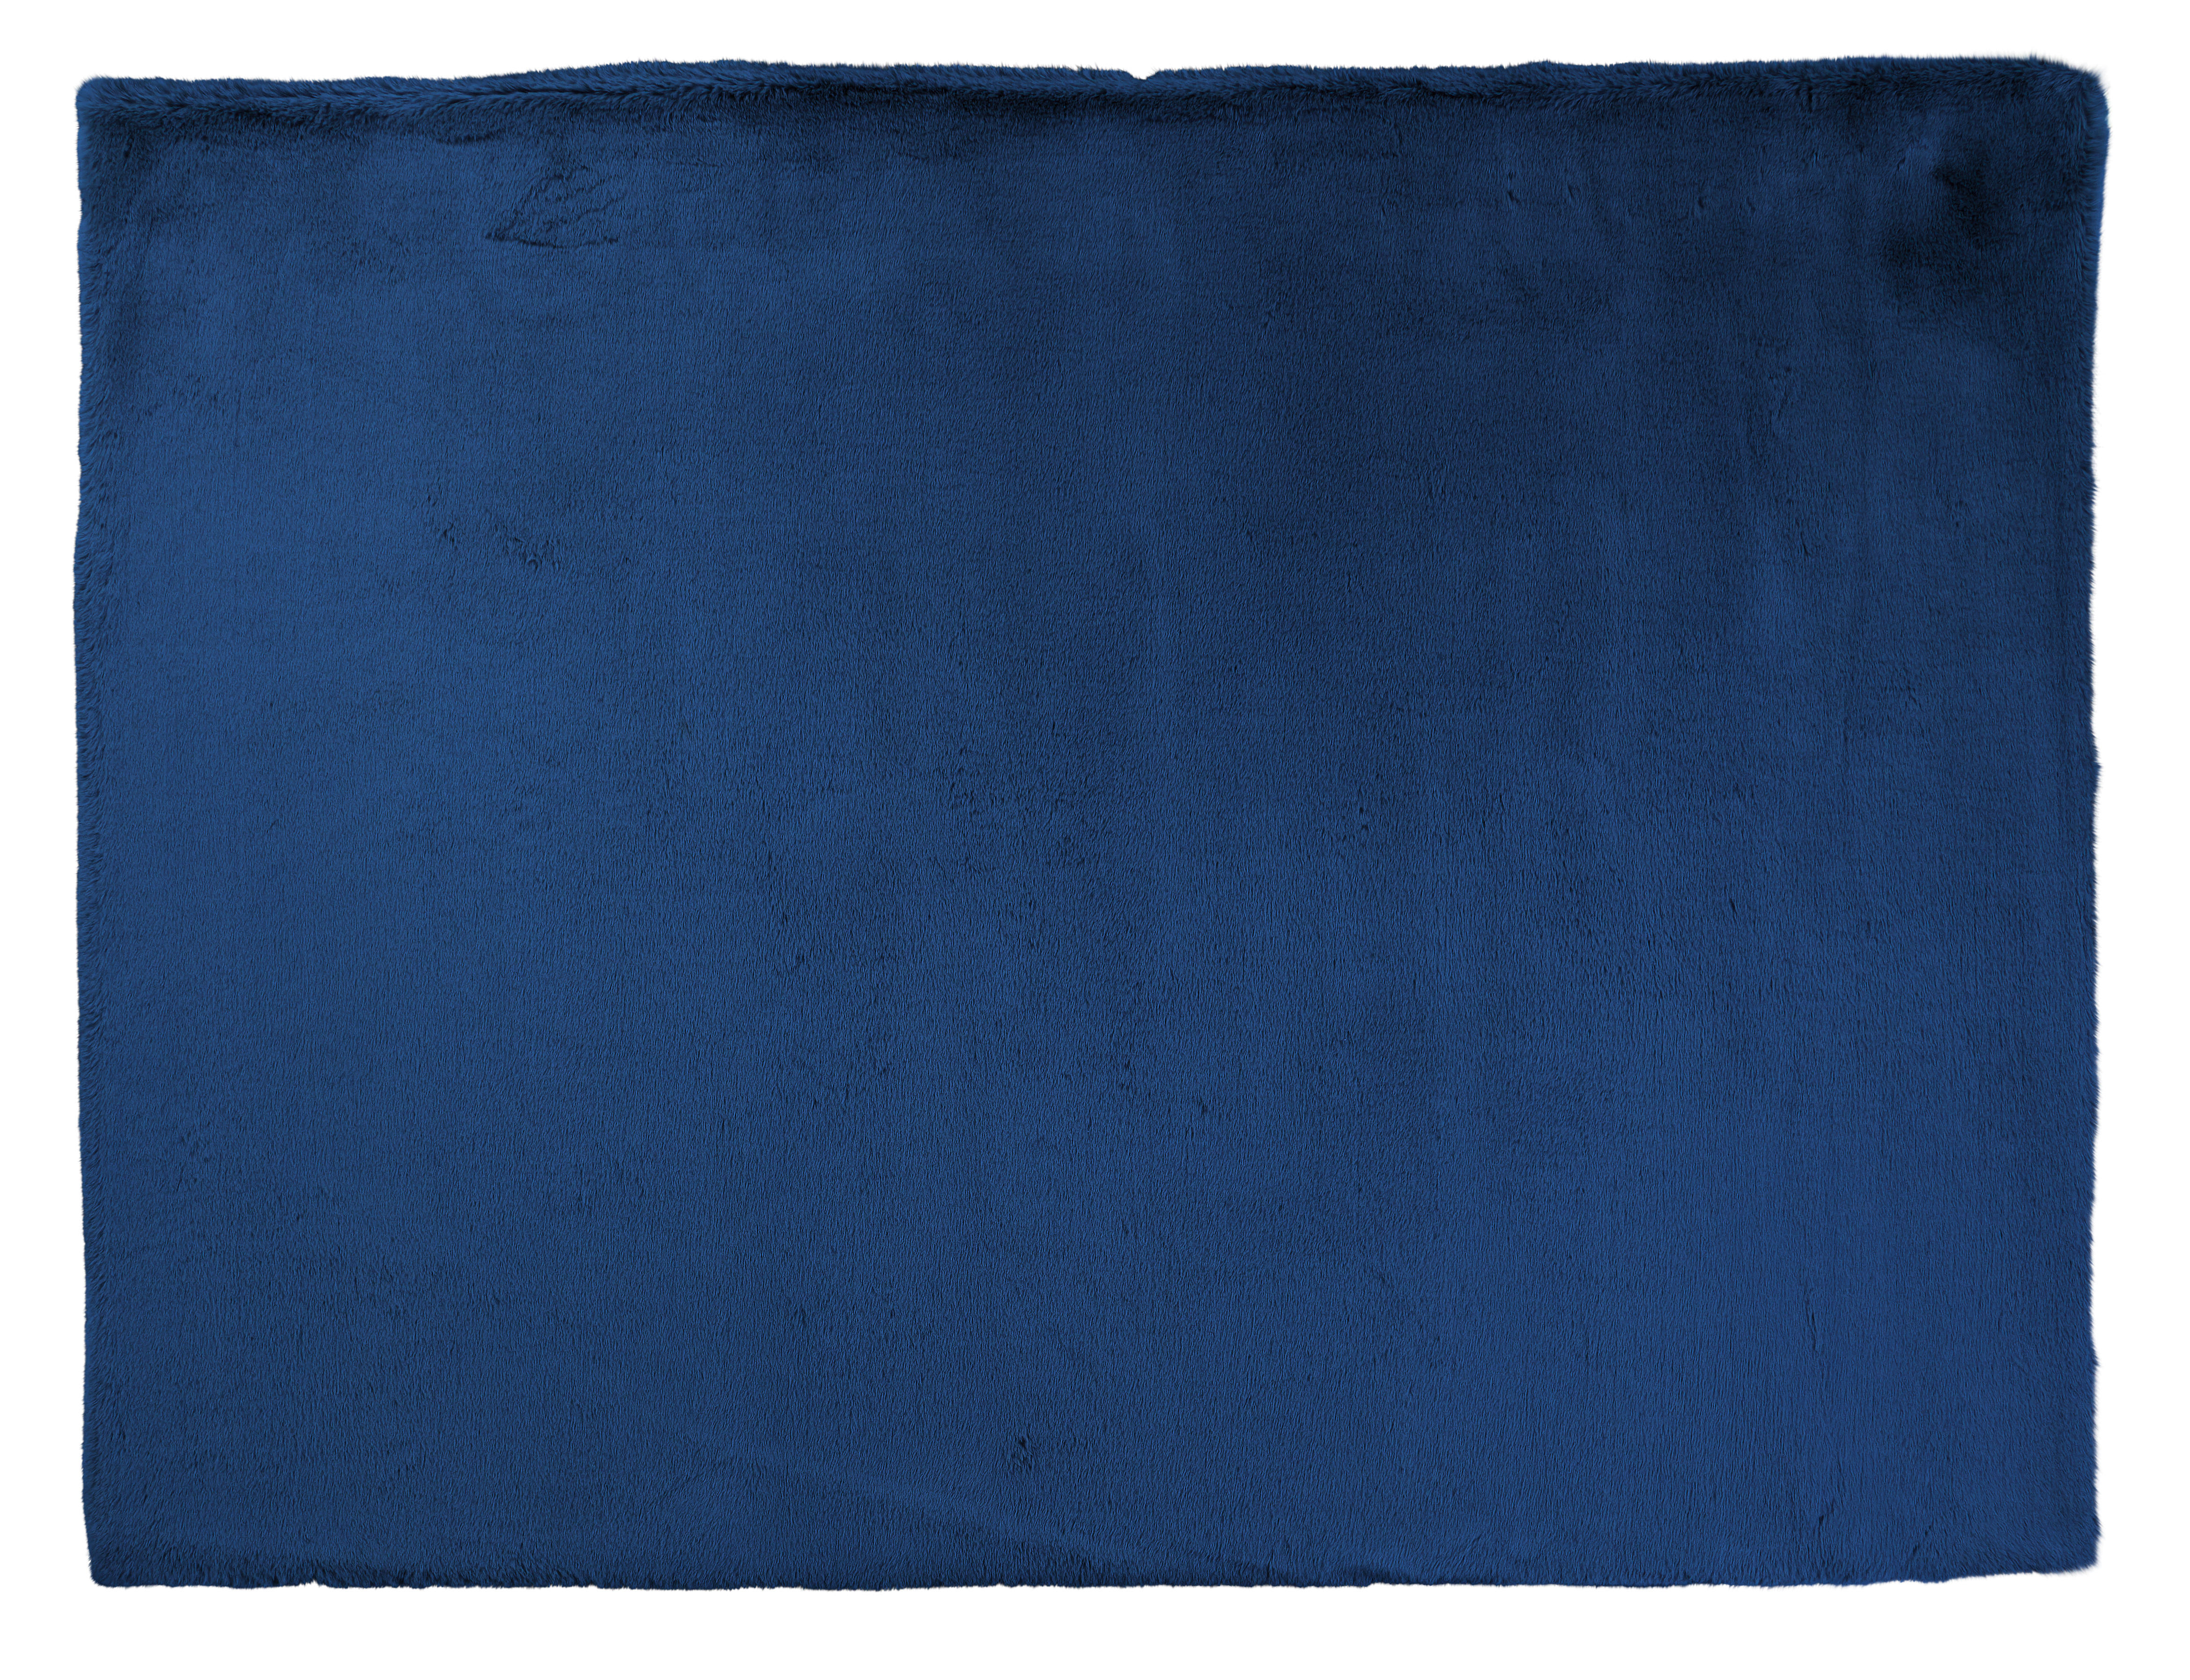 Fellimitat Moyo blau B/L: ca. 80x150 cm Moyo - blau (80,00/150,00cm)